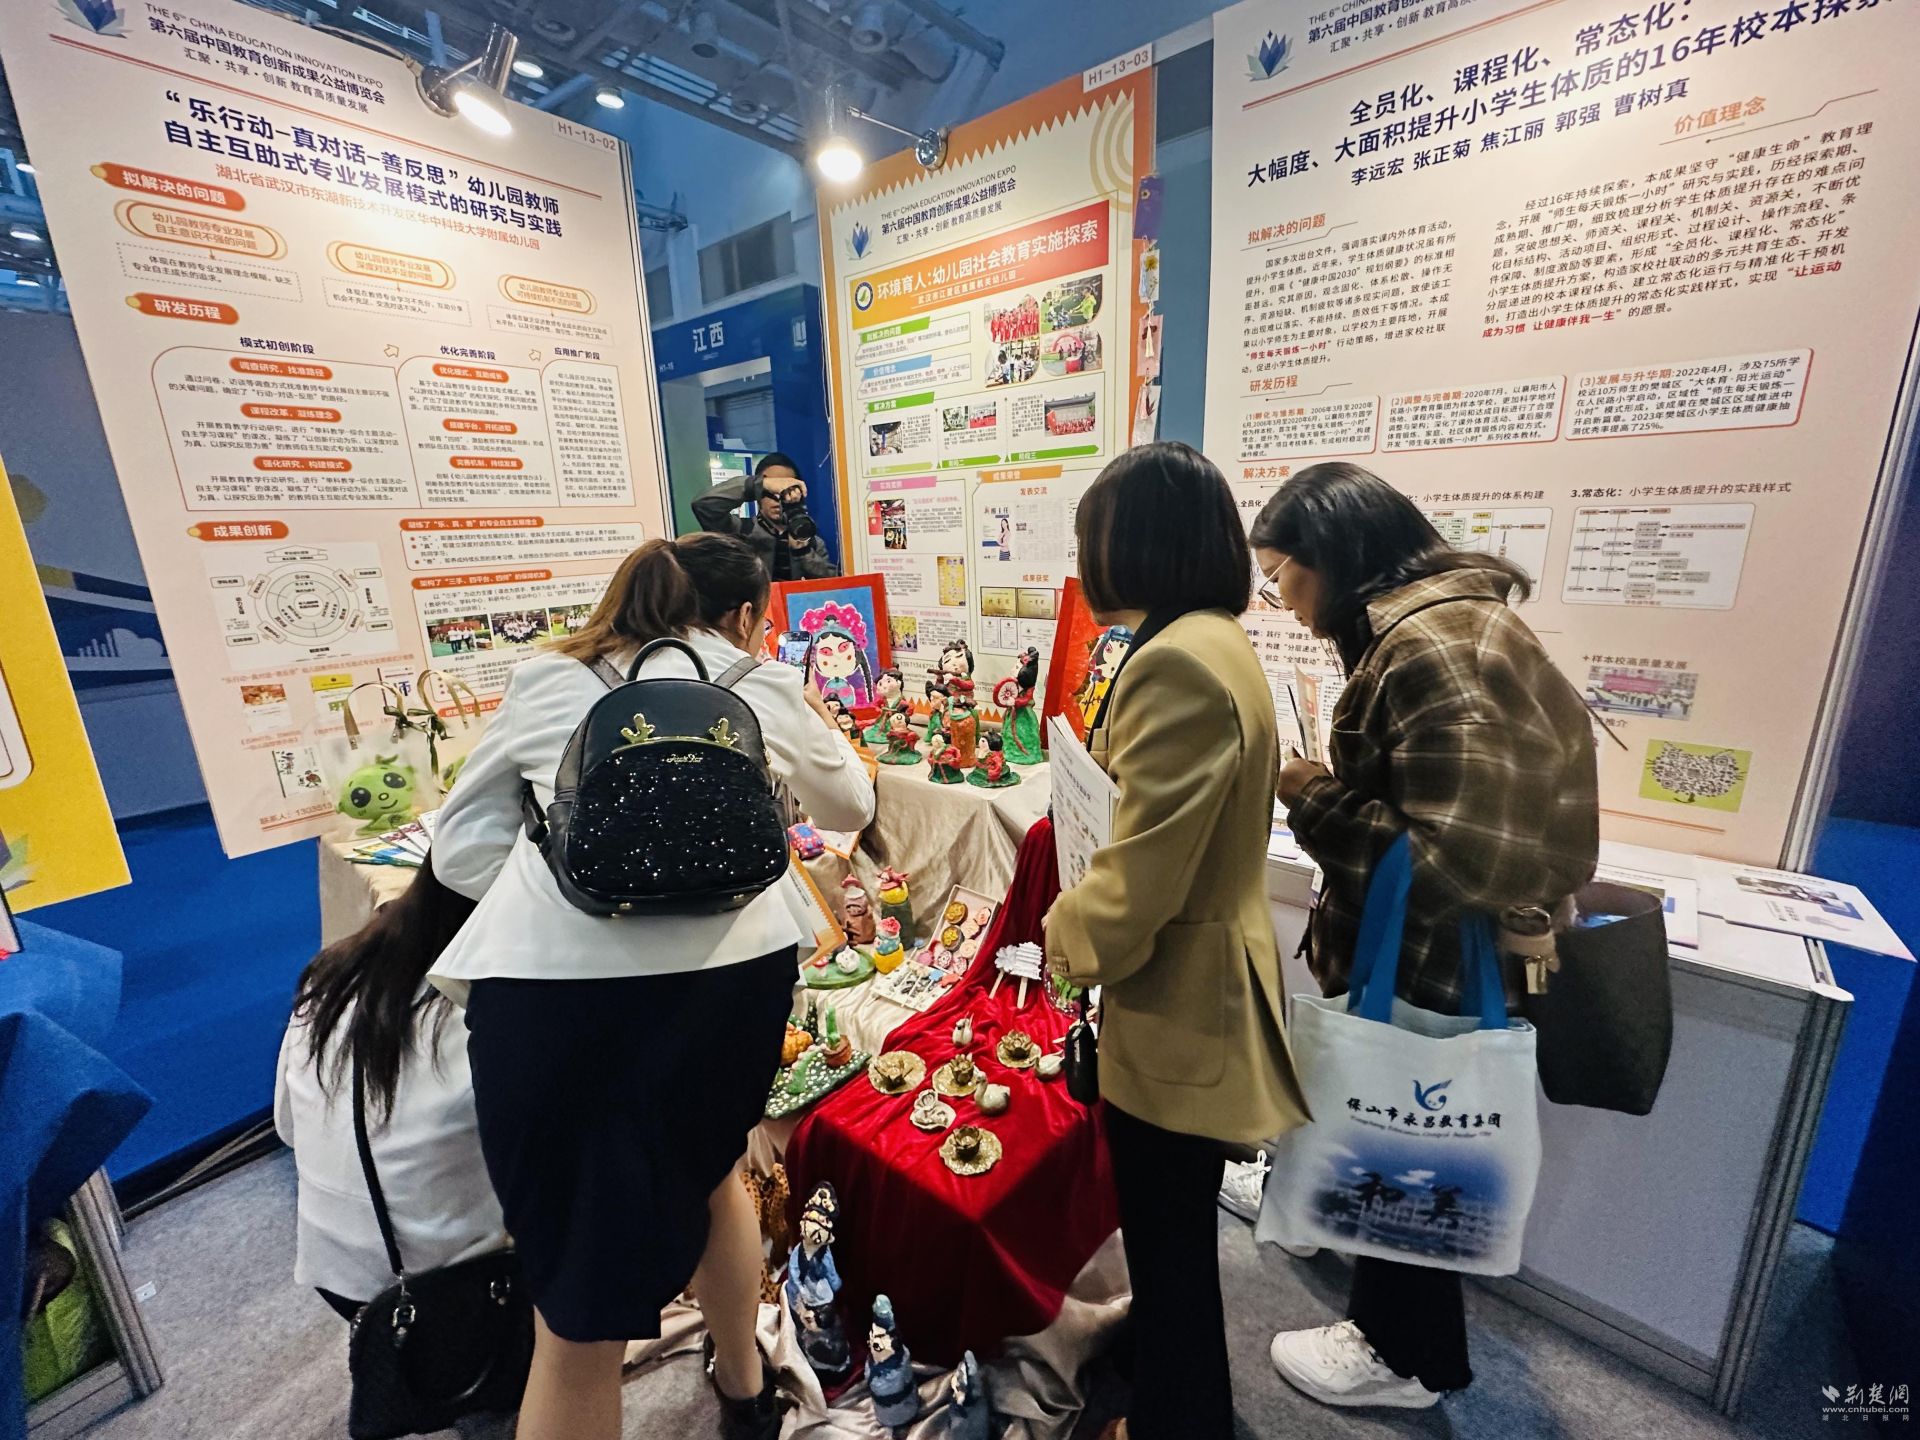 江夏区直属机关幼儿园“环境育人”成果在第六届中国教博会绽放